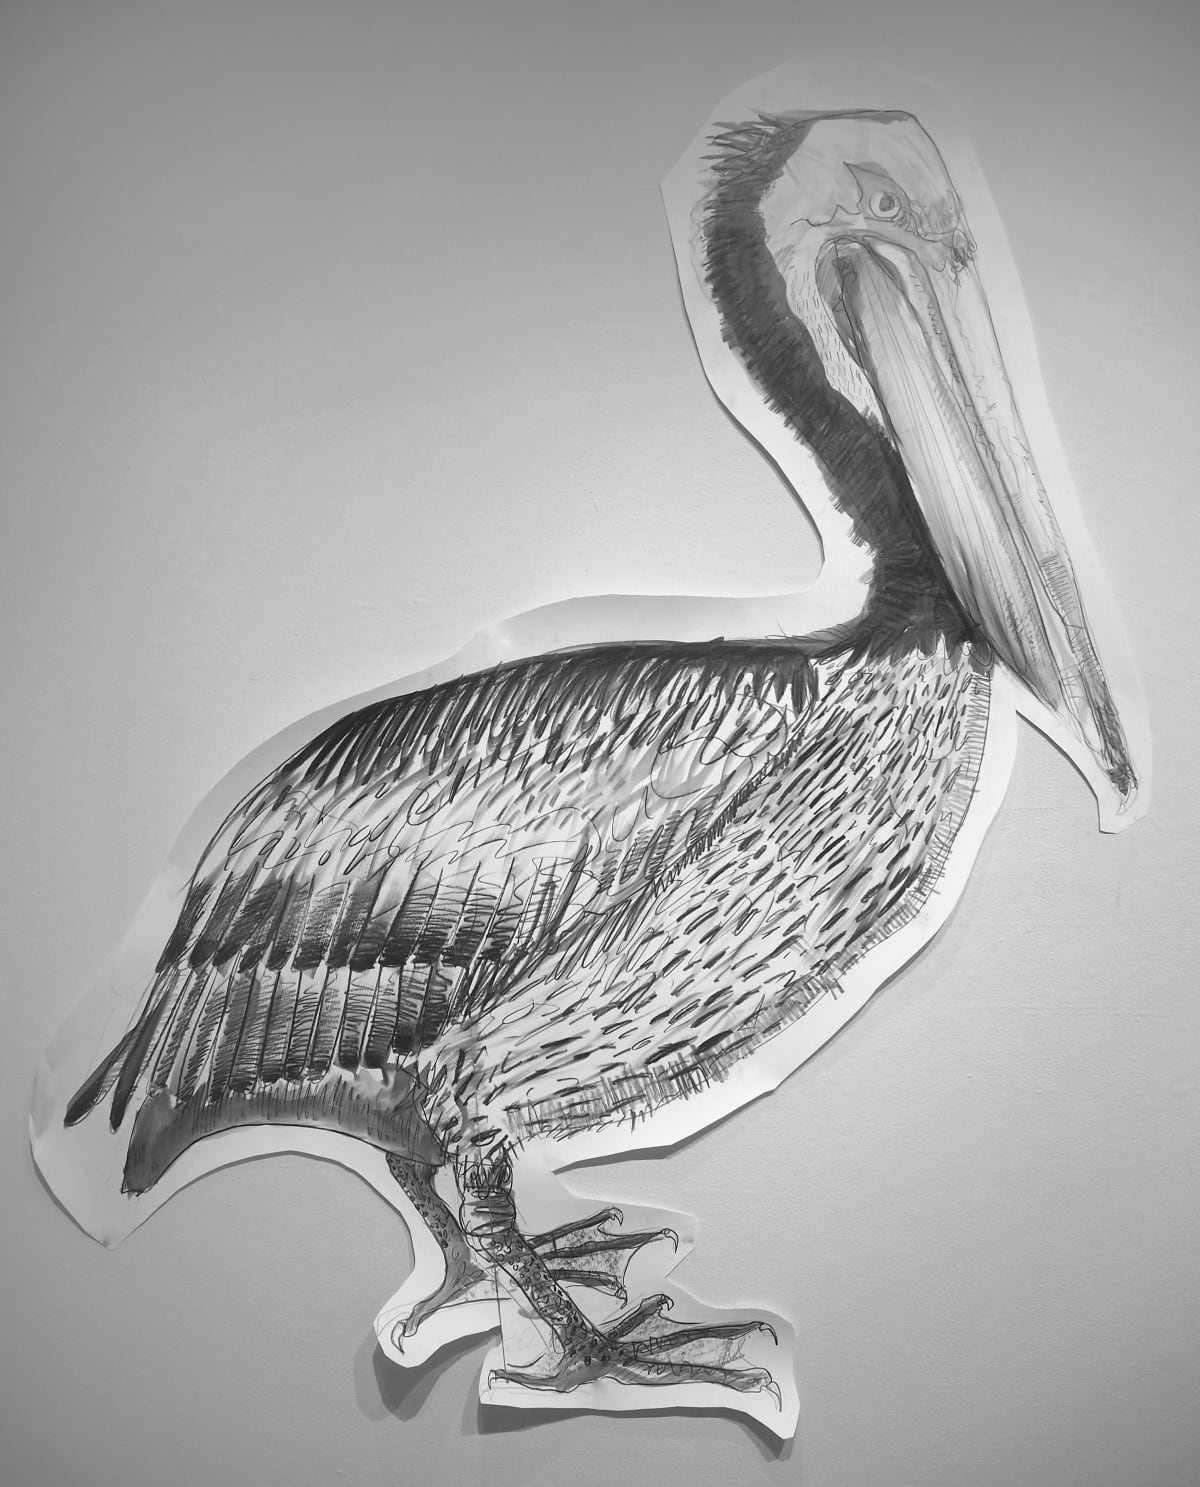 Brown Pelican (pelecanus occidentalis), 2019